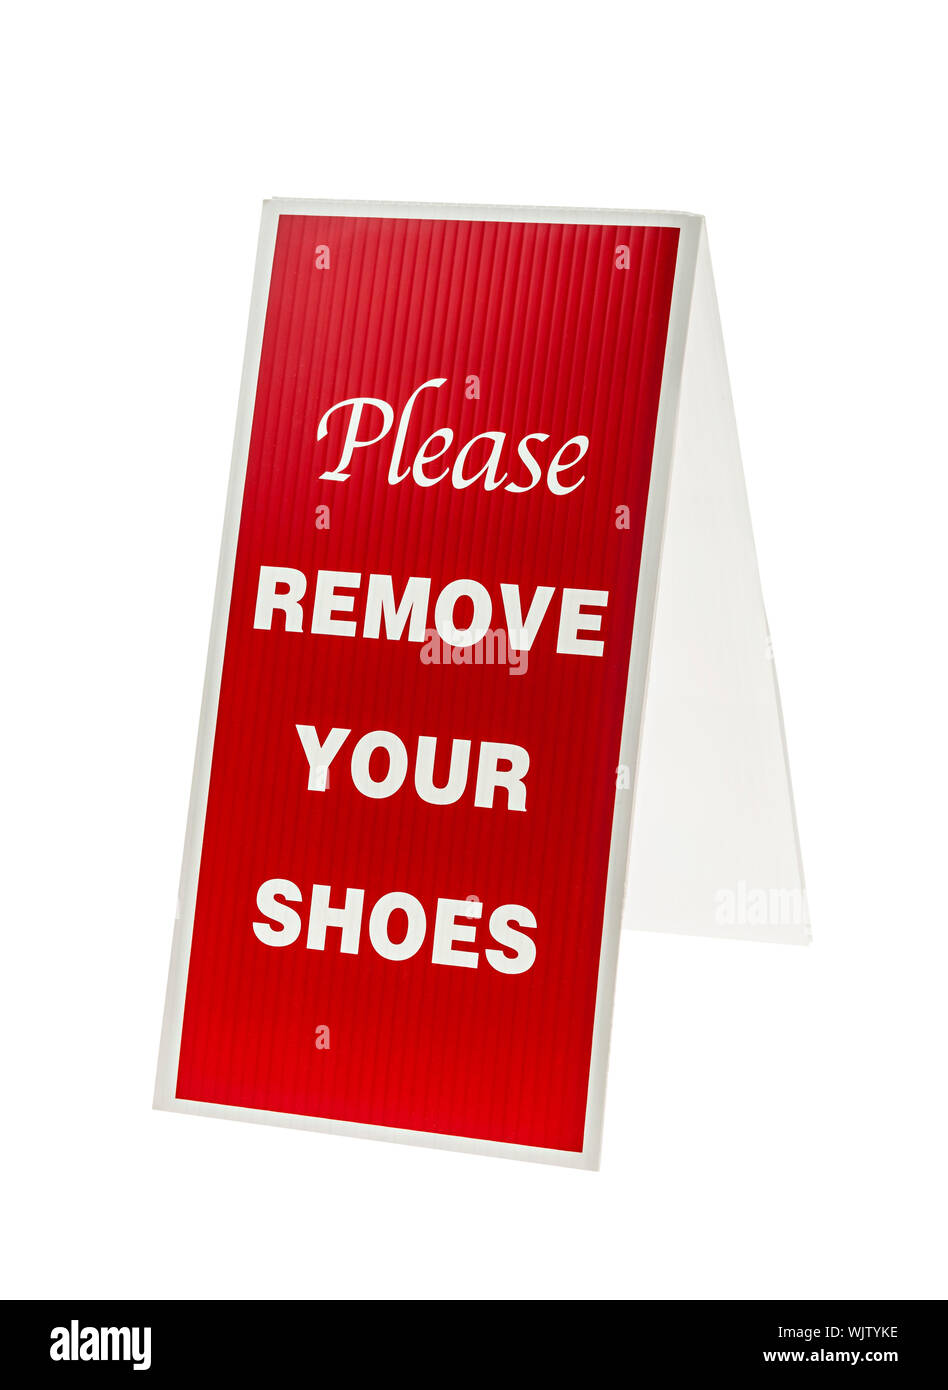 Please remove your shoes Banque de photographies et d'images à haute  résolution - Alamy